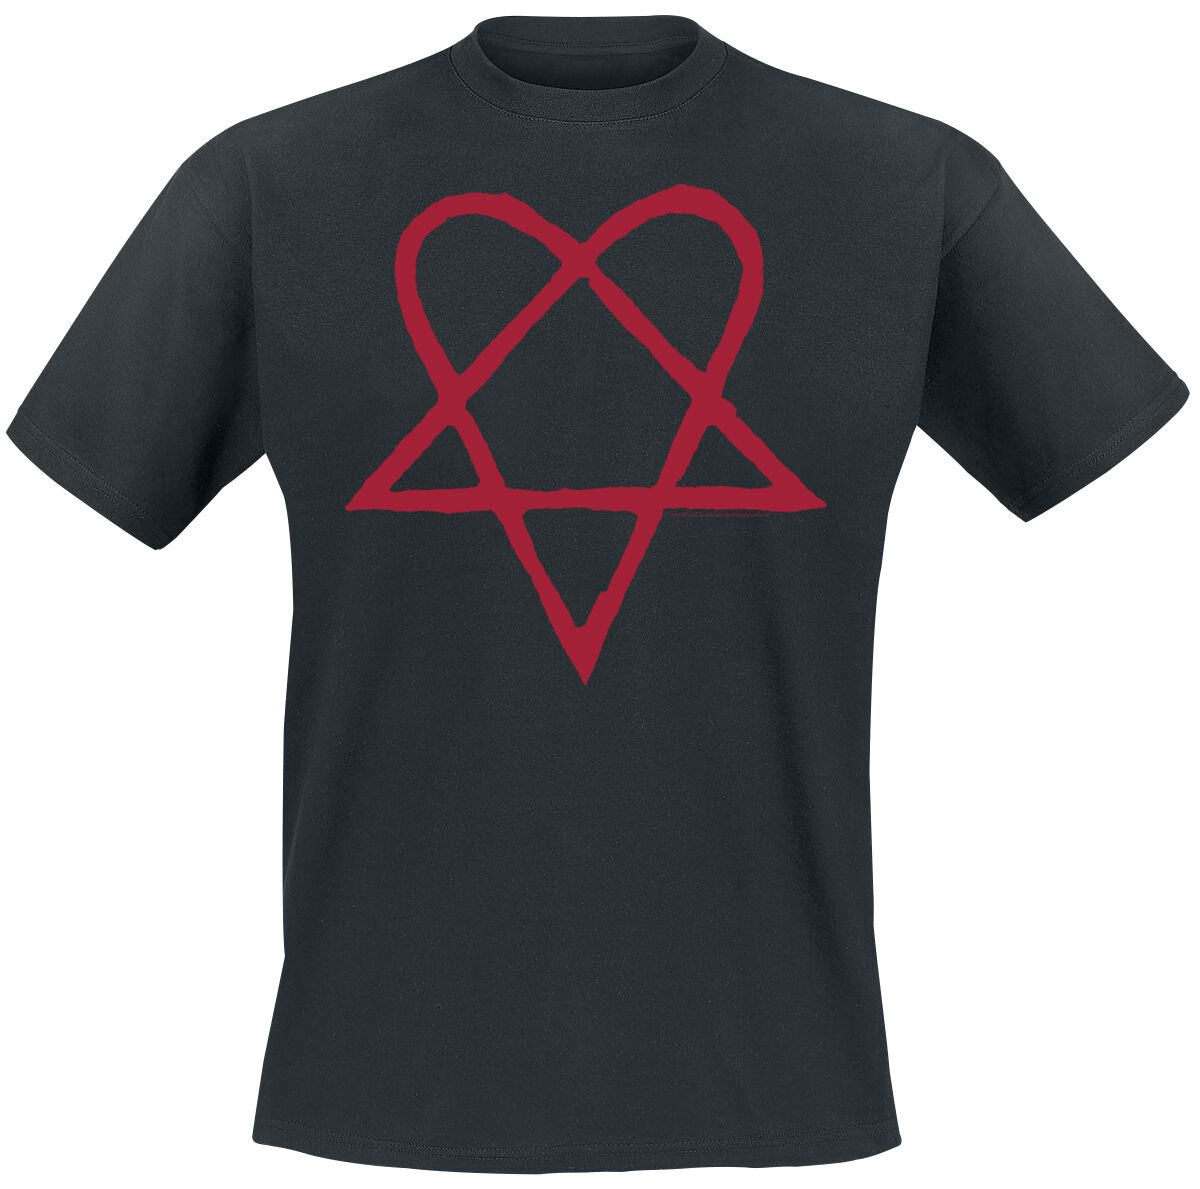 HIM T-Shirt - Dark Red Heartagram - S bis 4XL - für Männer - Größe XXL - schwarz  - Lizenziertes Merchandise!